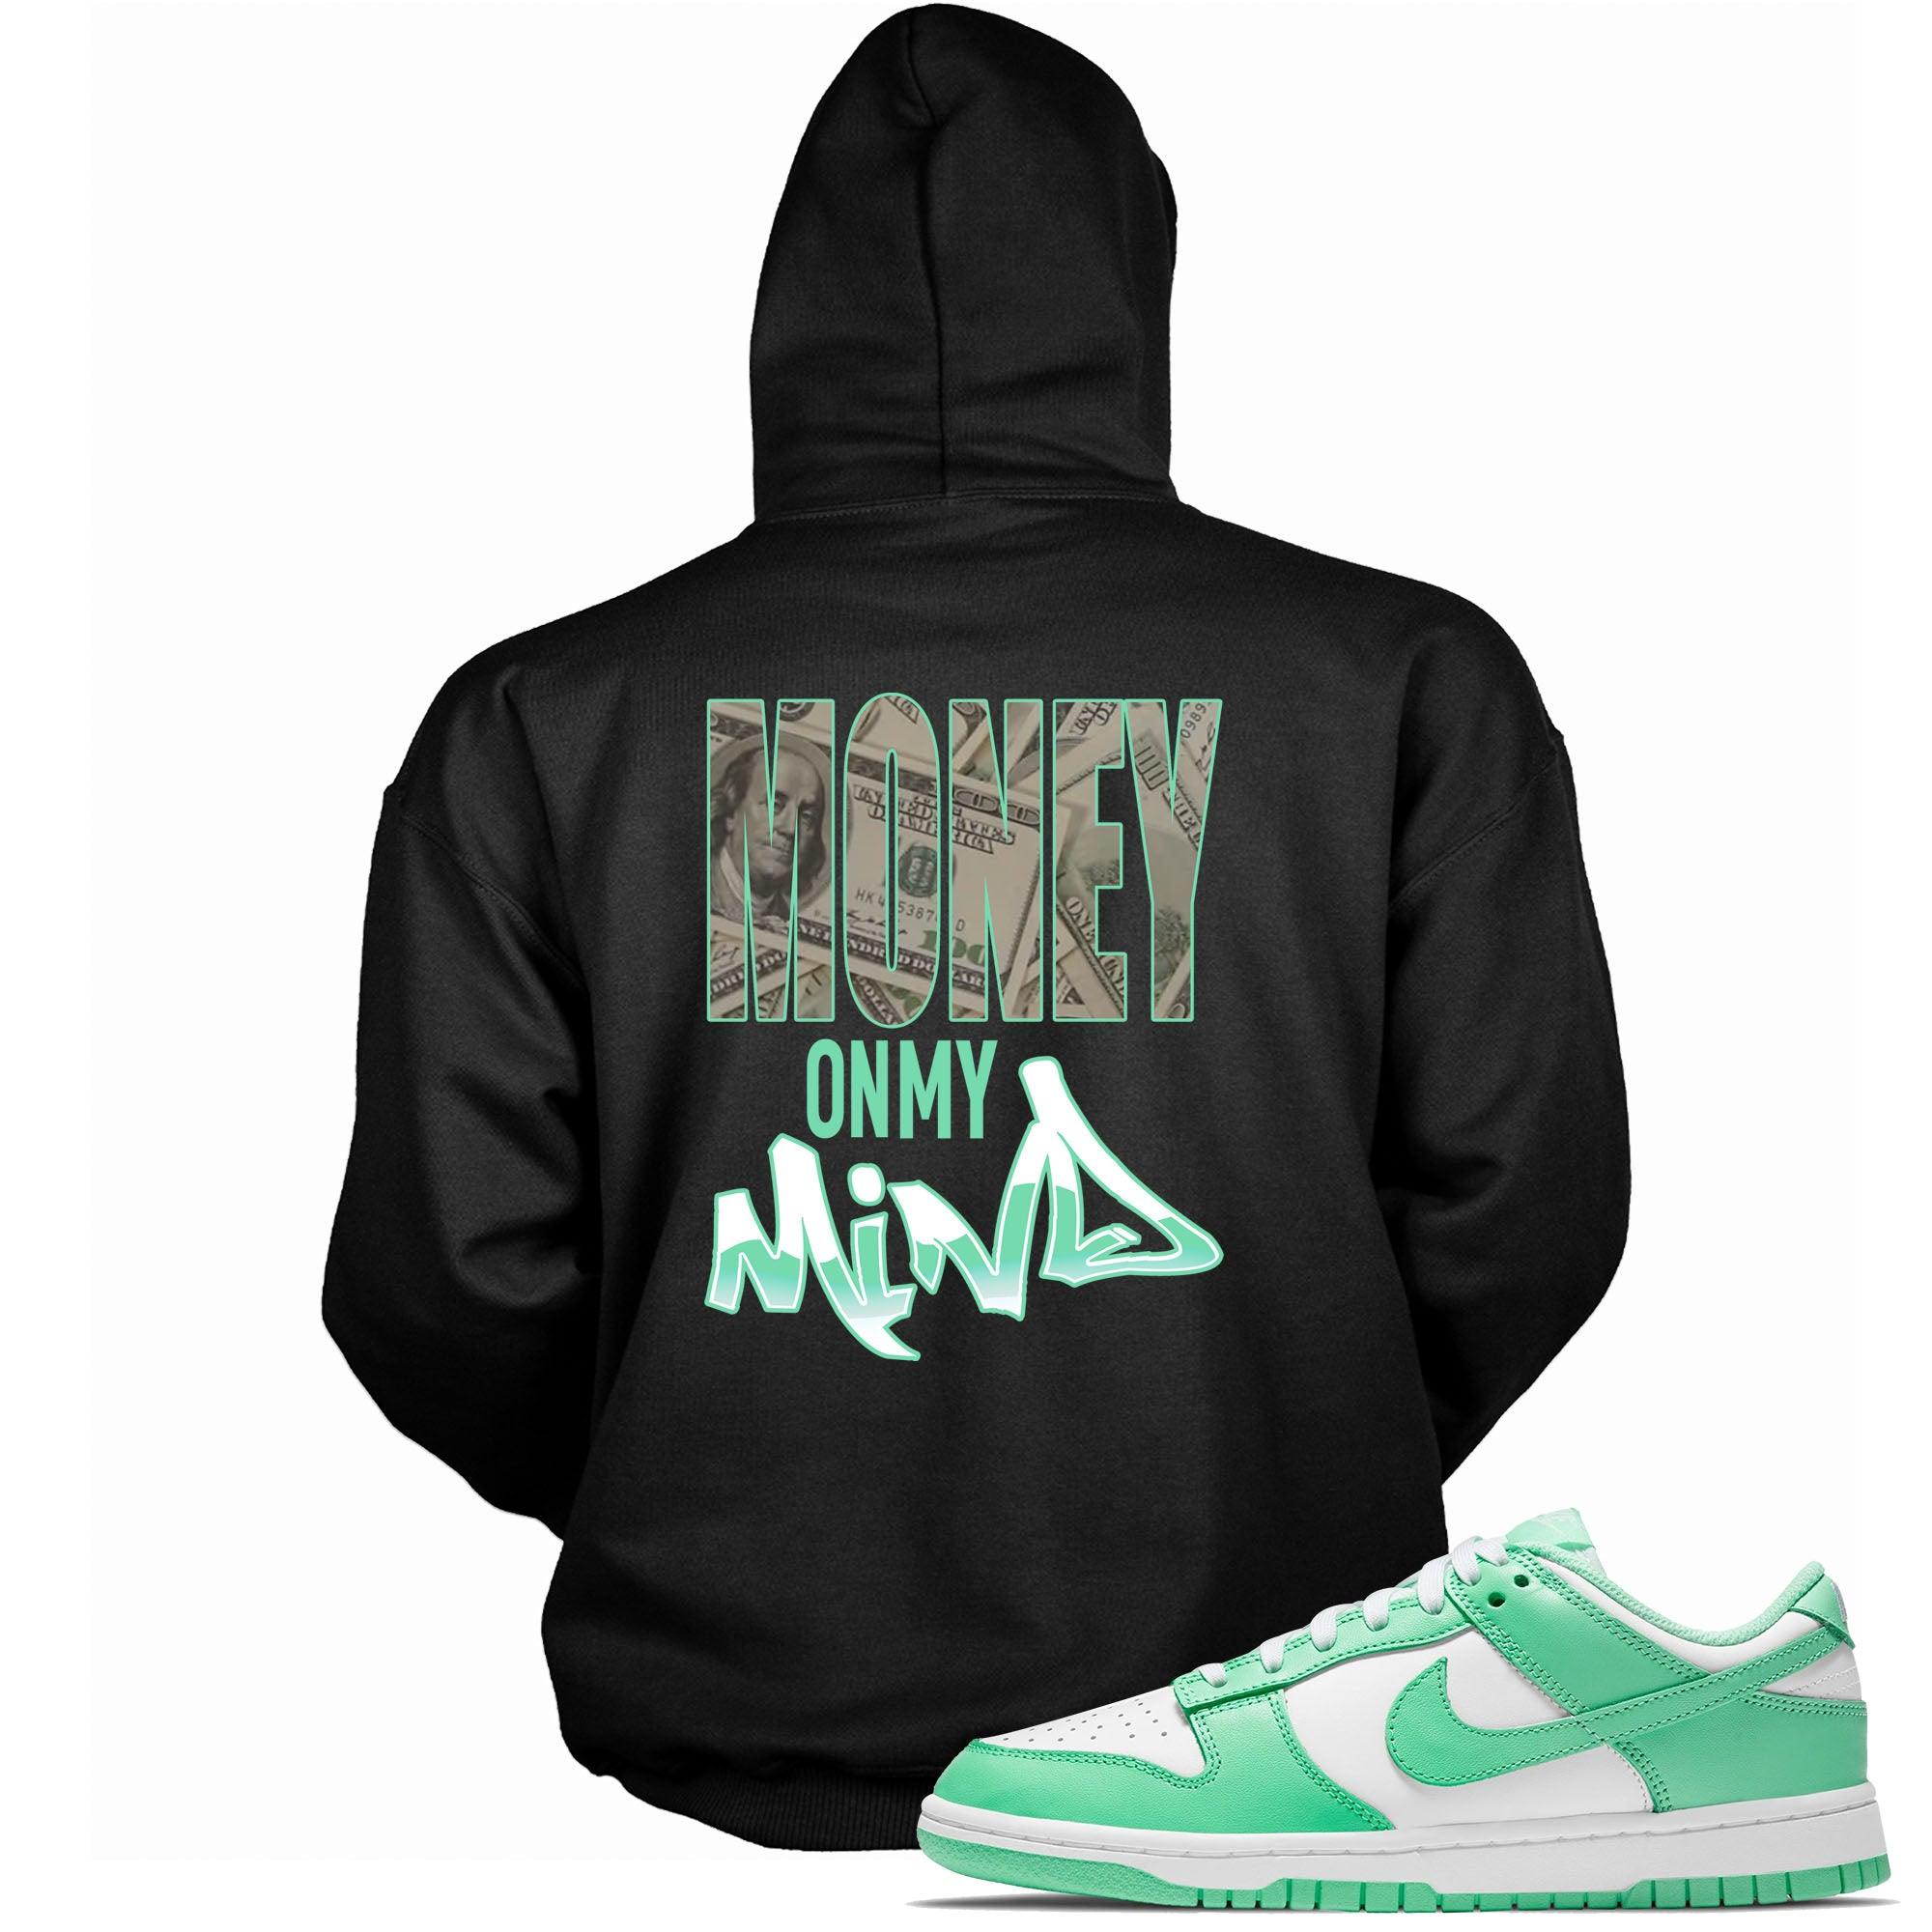 Money On My Mind Sneaker Sweatshirt Dunk Low Green Glow photo